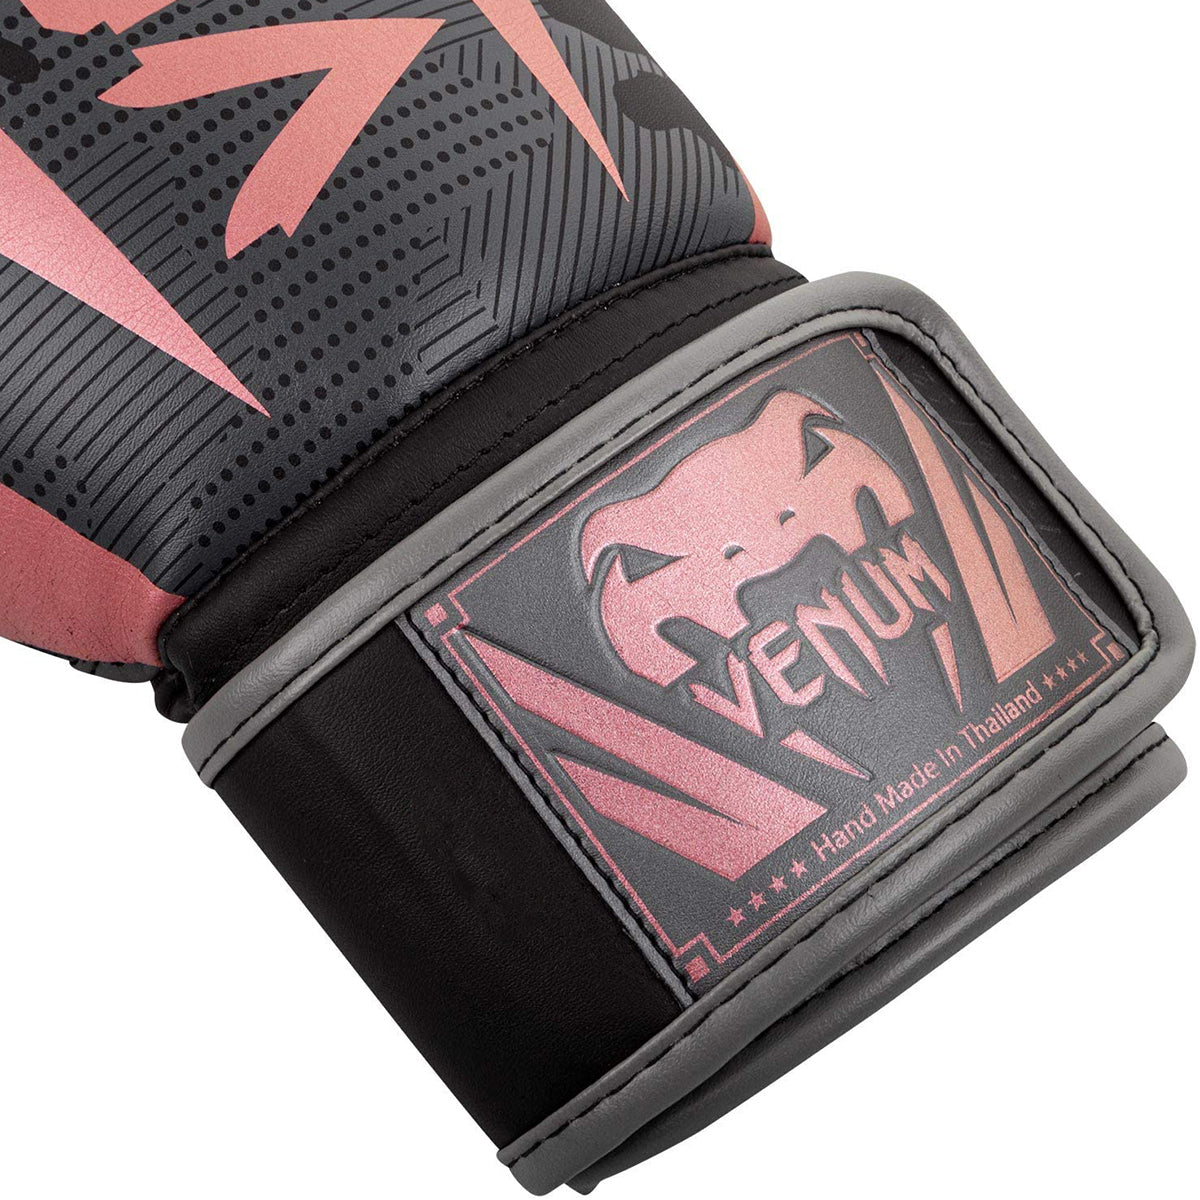 Venum Elite Hook and Loop Boxing Gloves - Black/Pink/Gold Venum